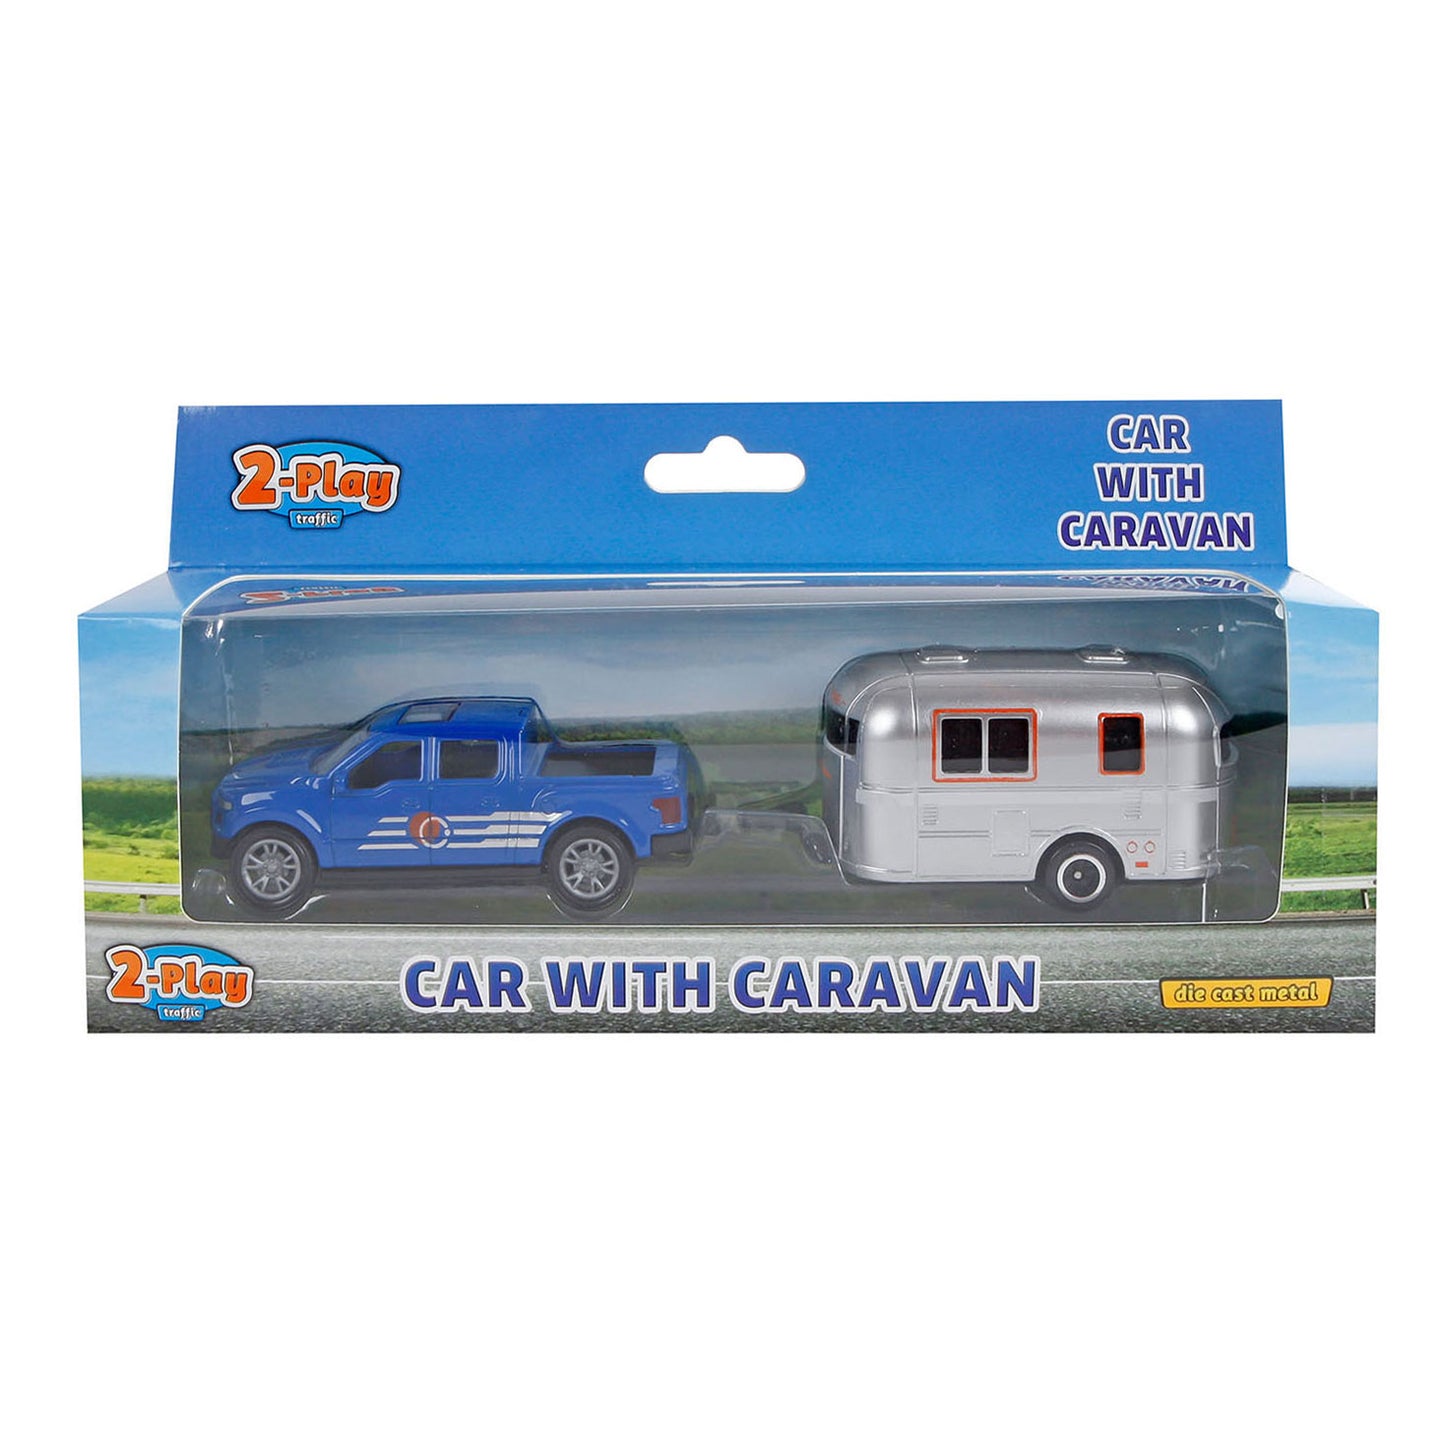 2 Play Tire de tirar con caravana con caravana